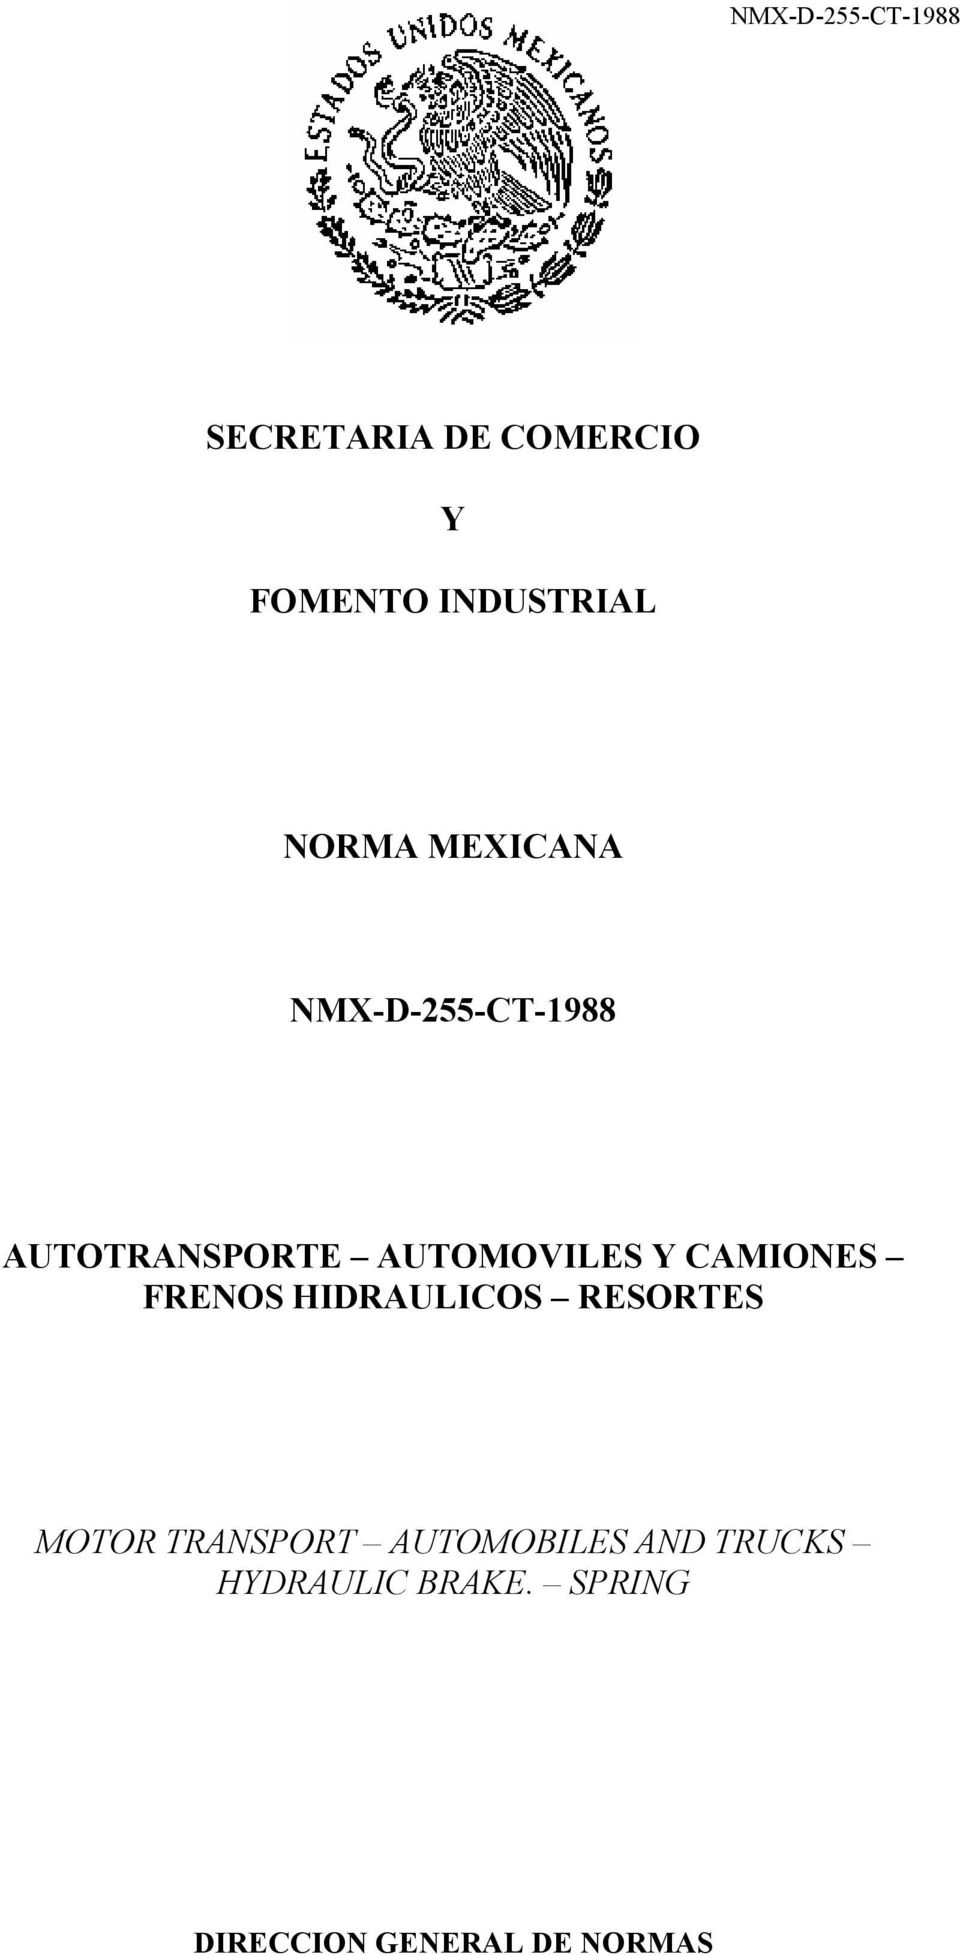 FRENOS HIDRAULICOS RESORTES MOTOR TRANSPORT AUTOMOBILES